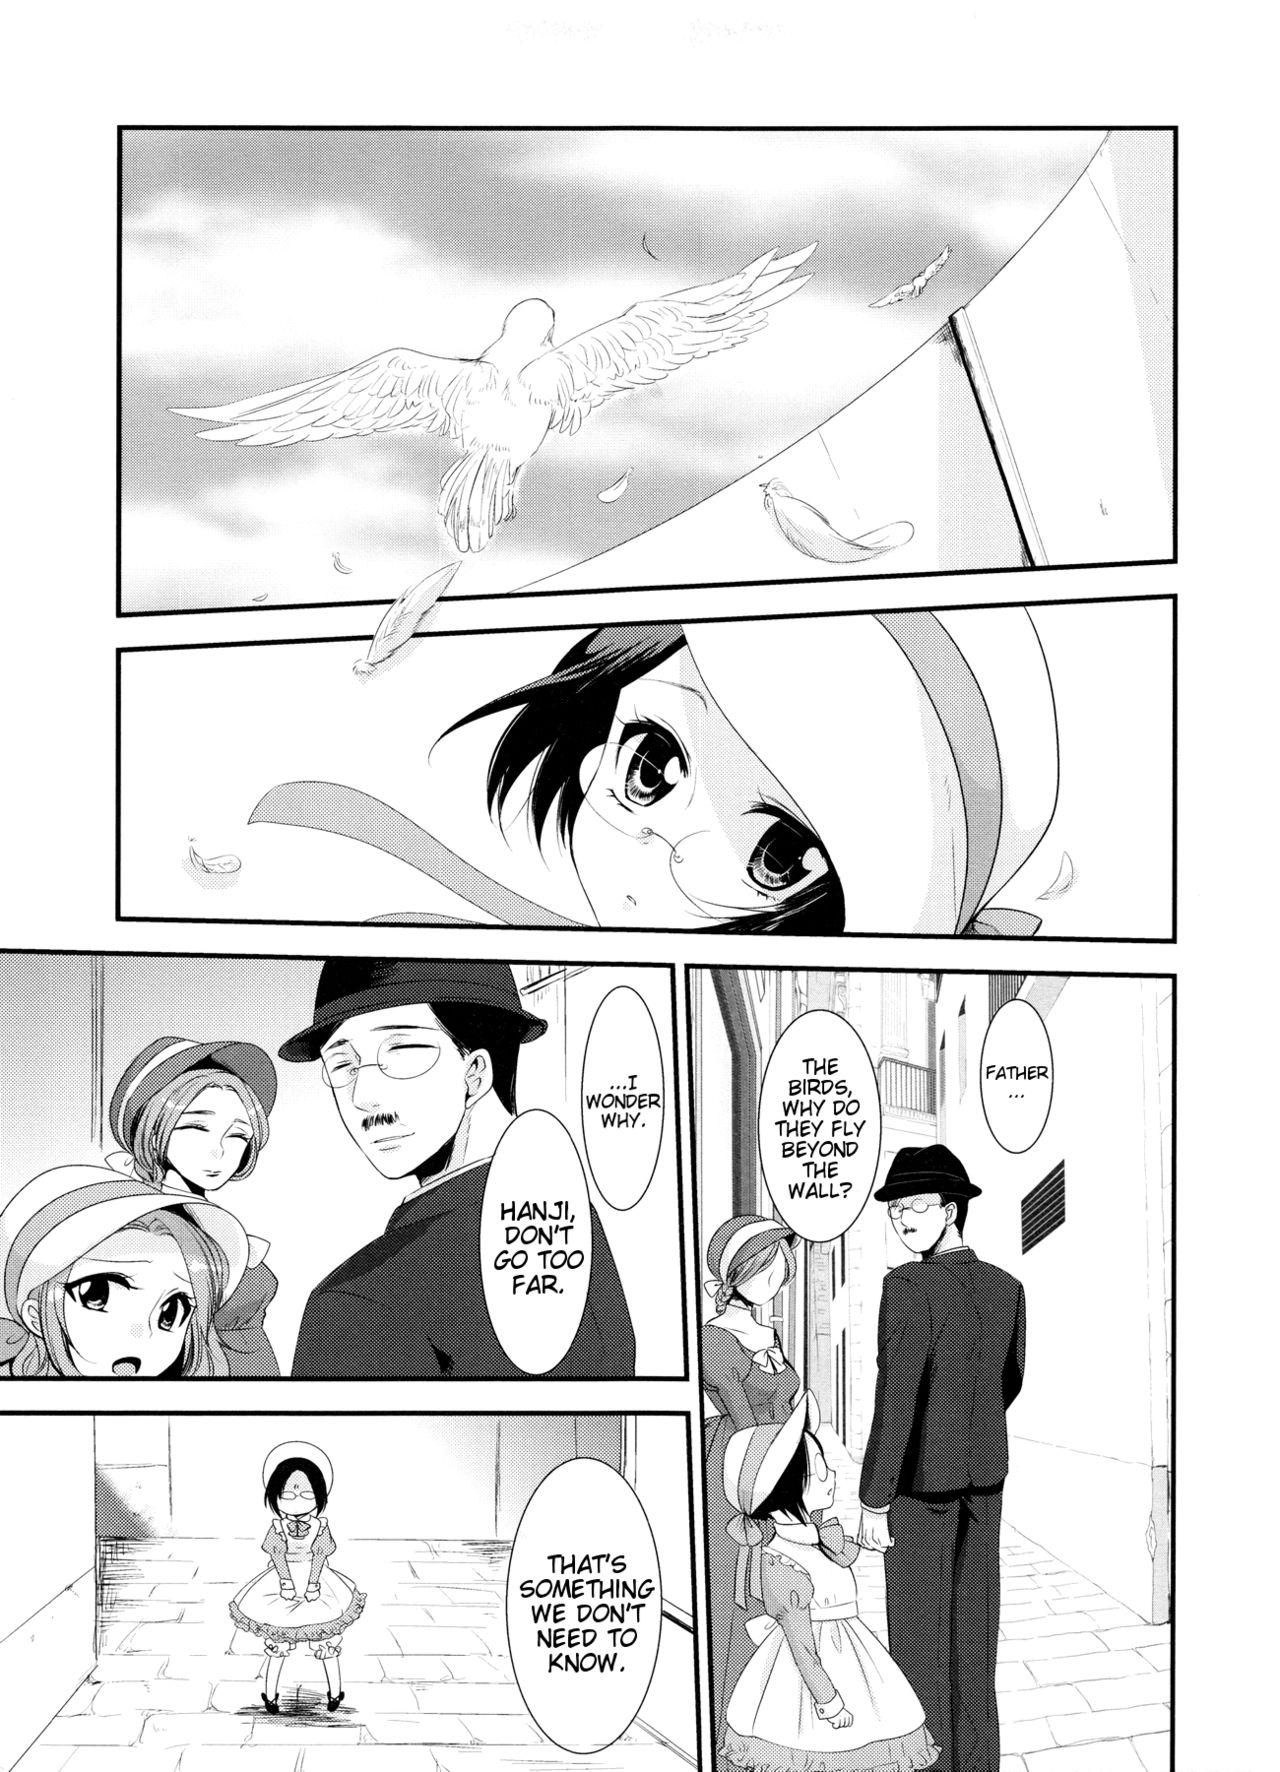 Nut kiss me once again - Shingeki no kyojin Swingers - Page 3